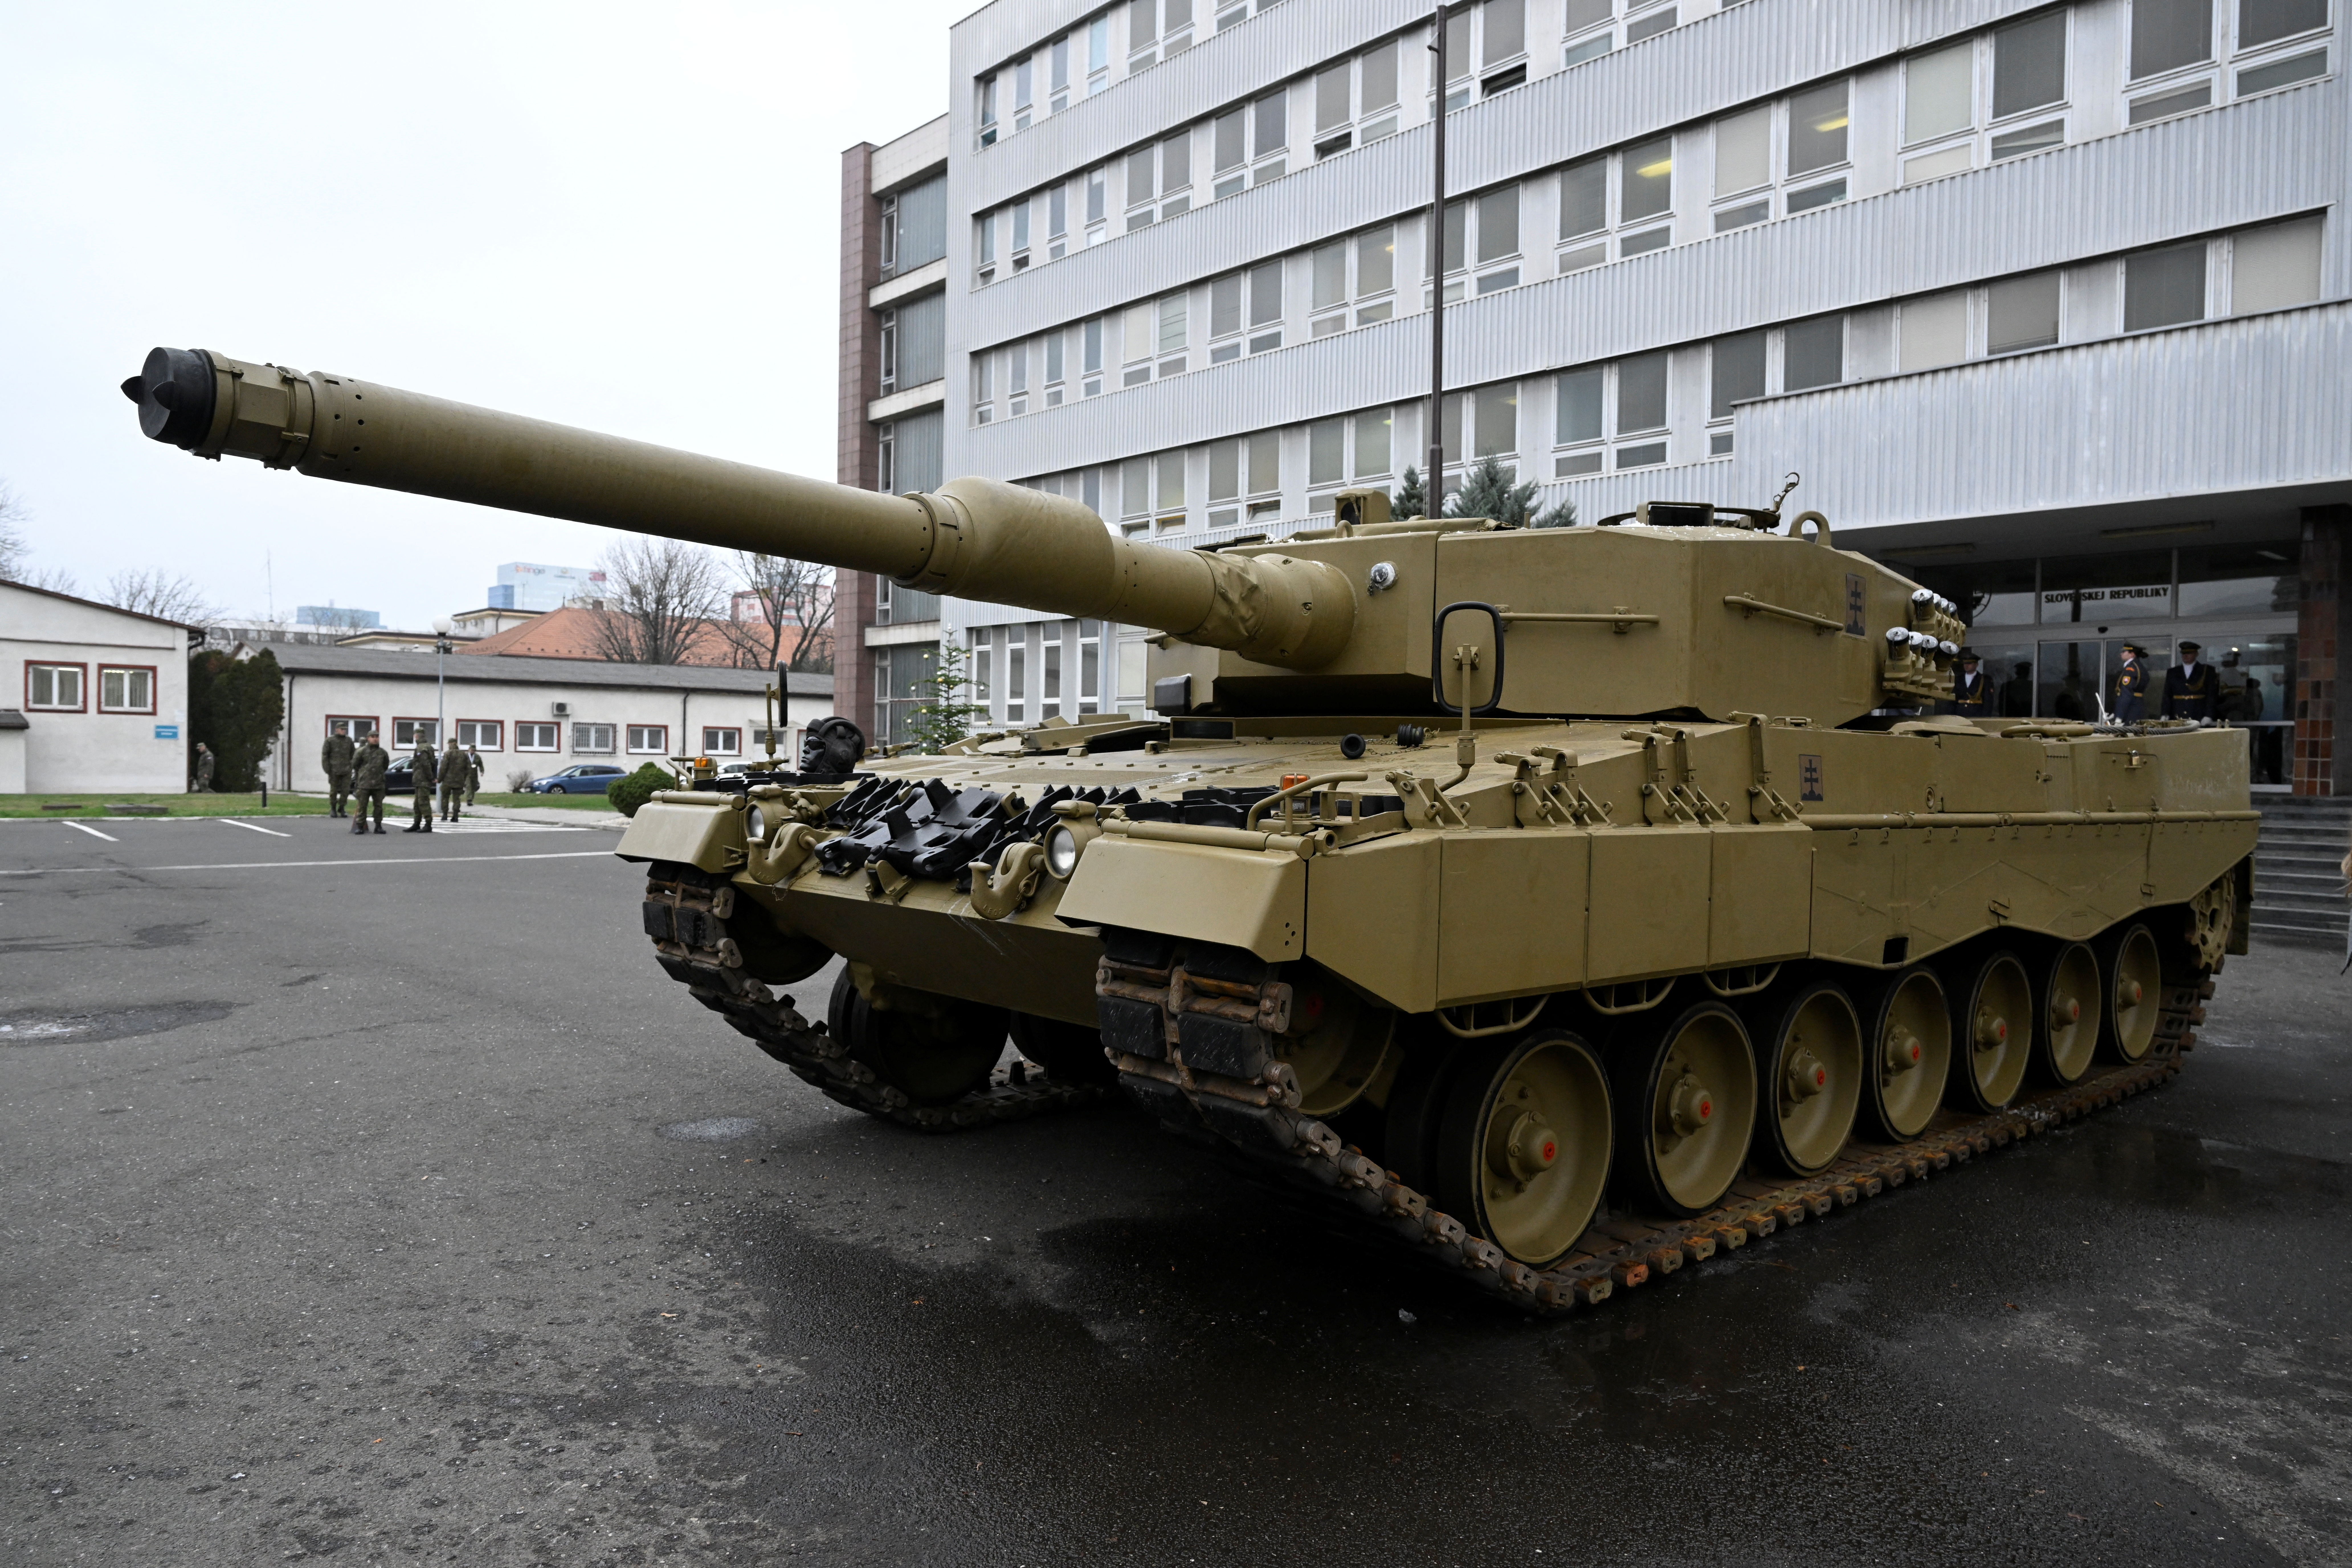 Φινλανδία: Στέλνει στην Ουκρανία τρία Leopard 2 κατάλληλα για άρση ναρκοπεδίων